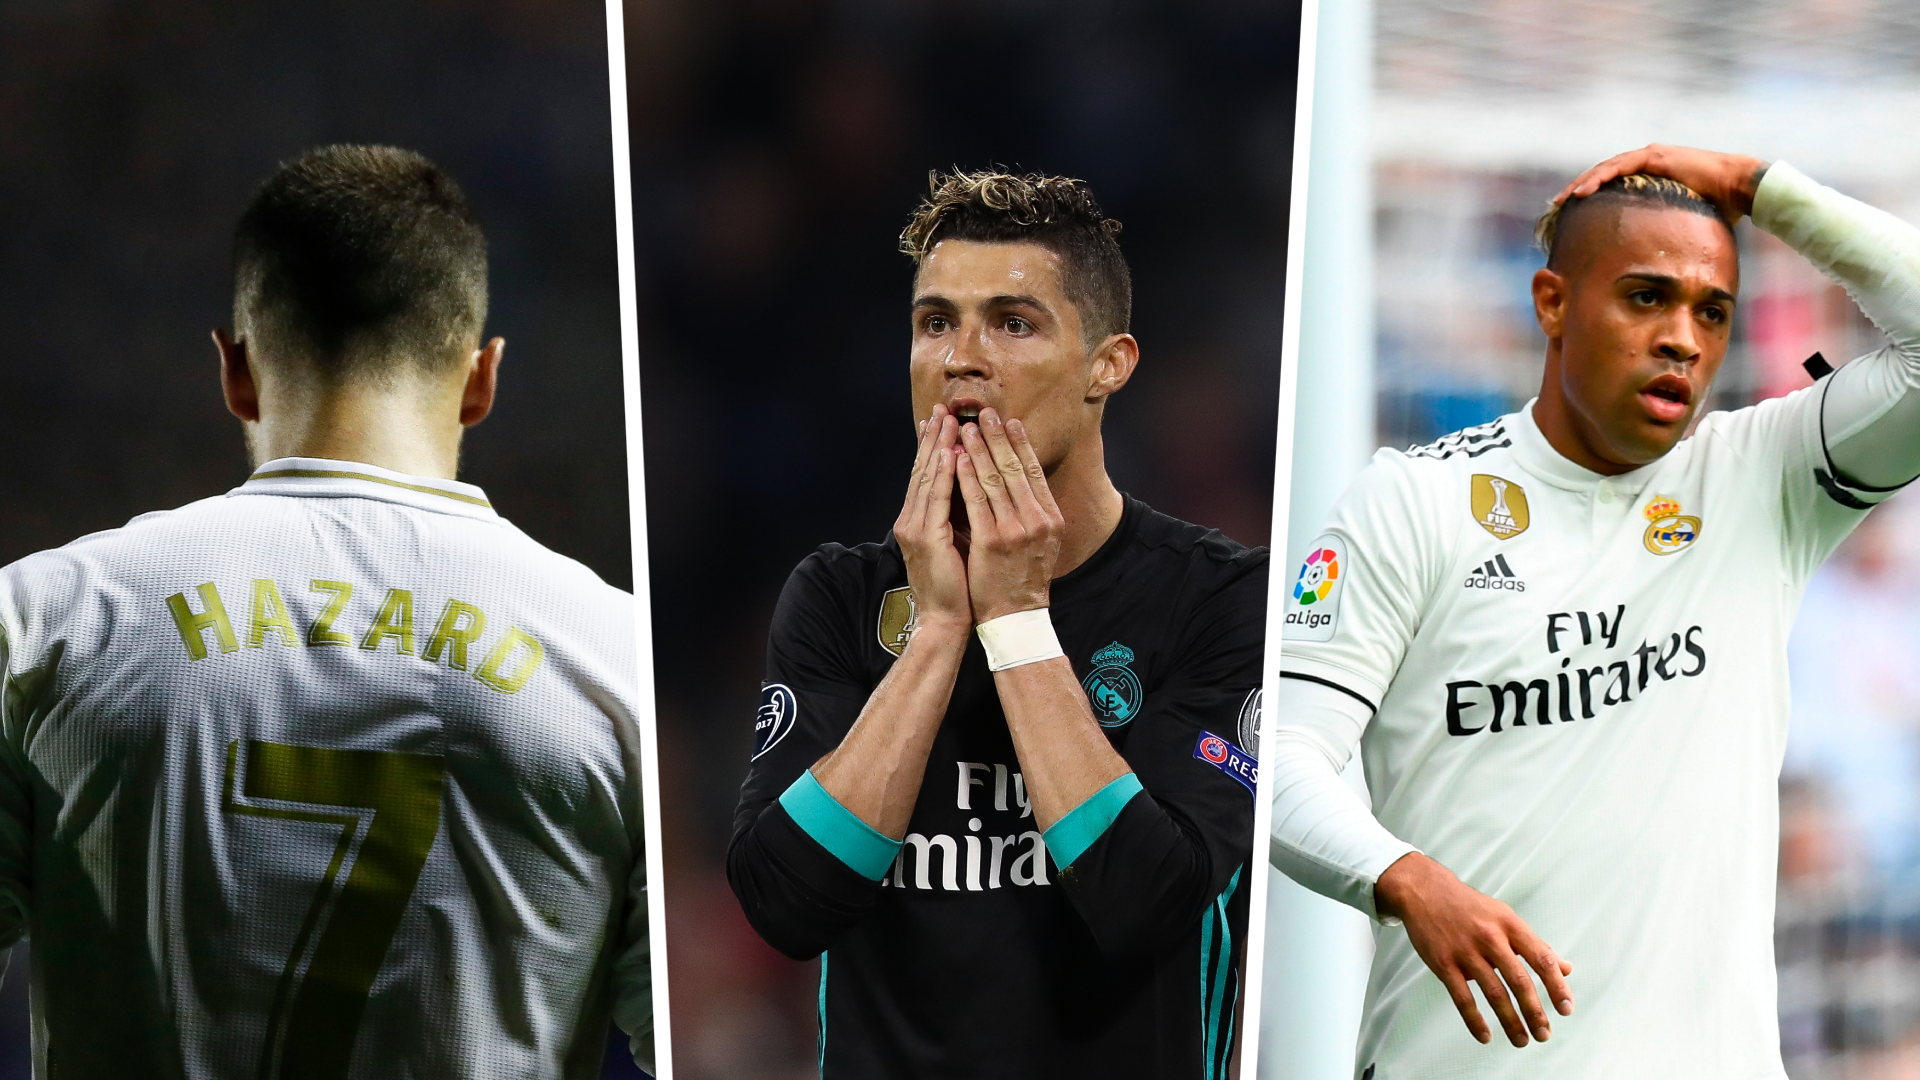 Real Madrid: La camiseta de Cristiano Ronaldo se vende pero